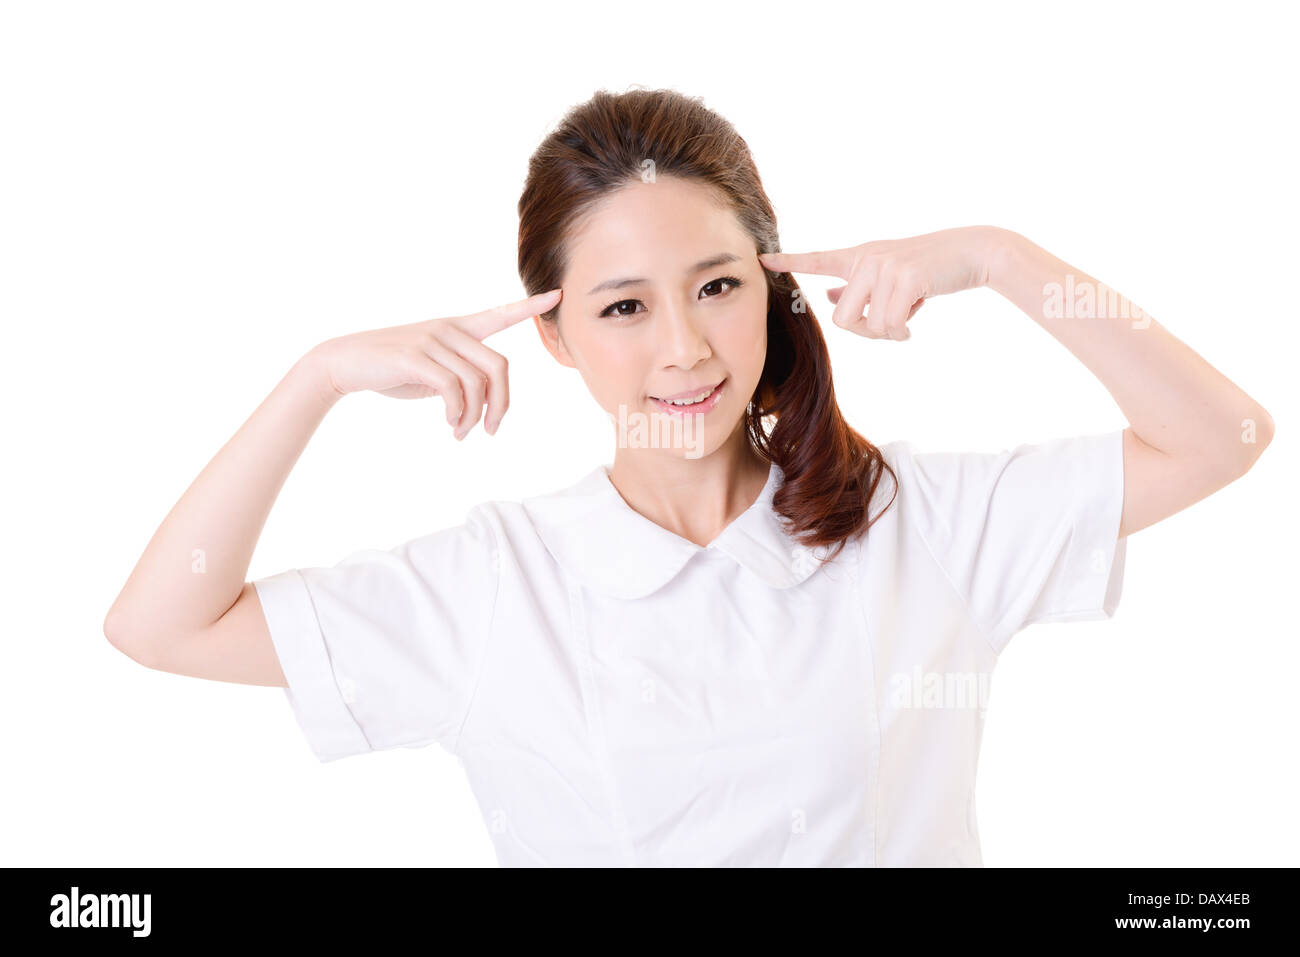 Smiling Asian nurse Stock Photo